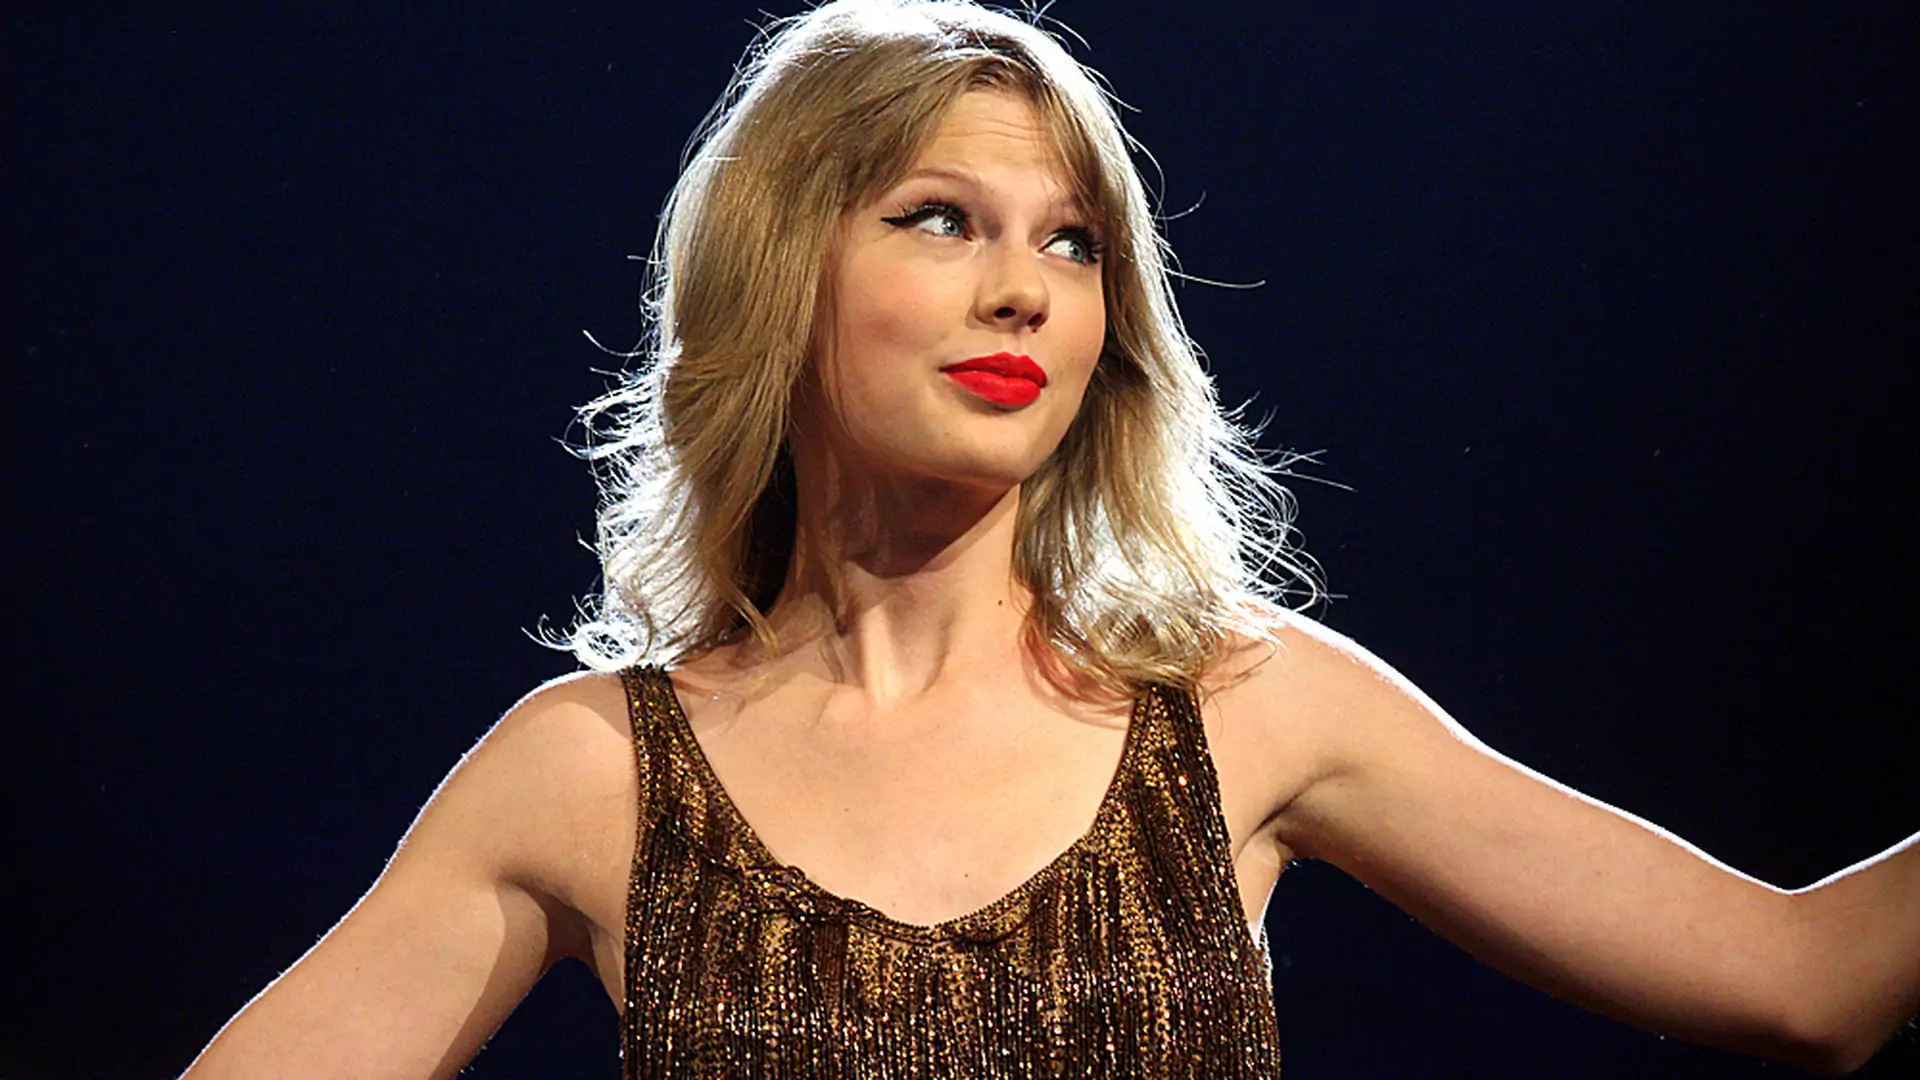 11 dowodów na to, że każdy chciałby być Taylor Swift